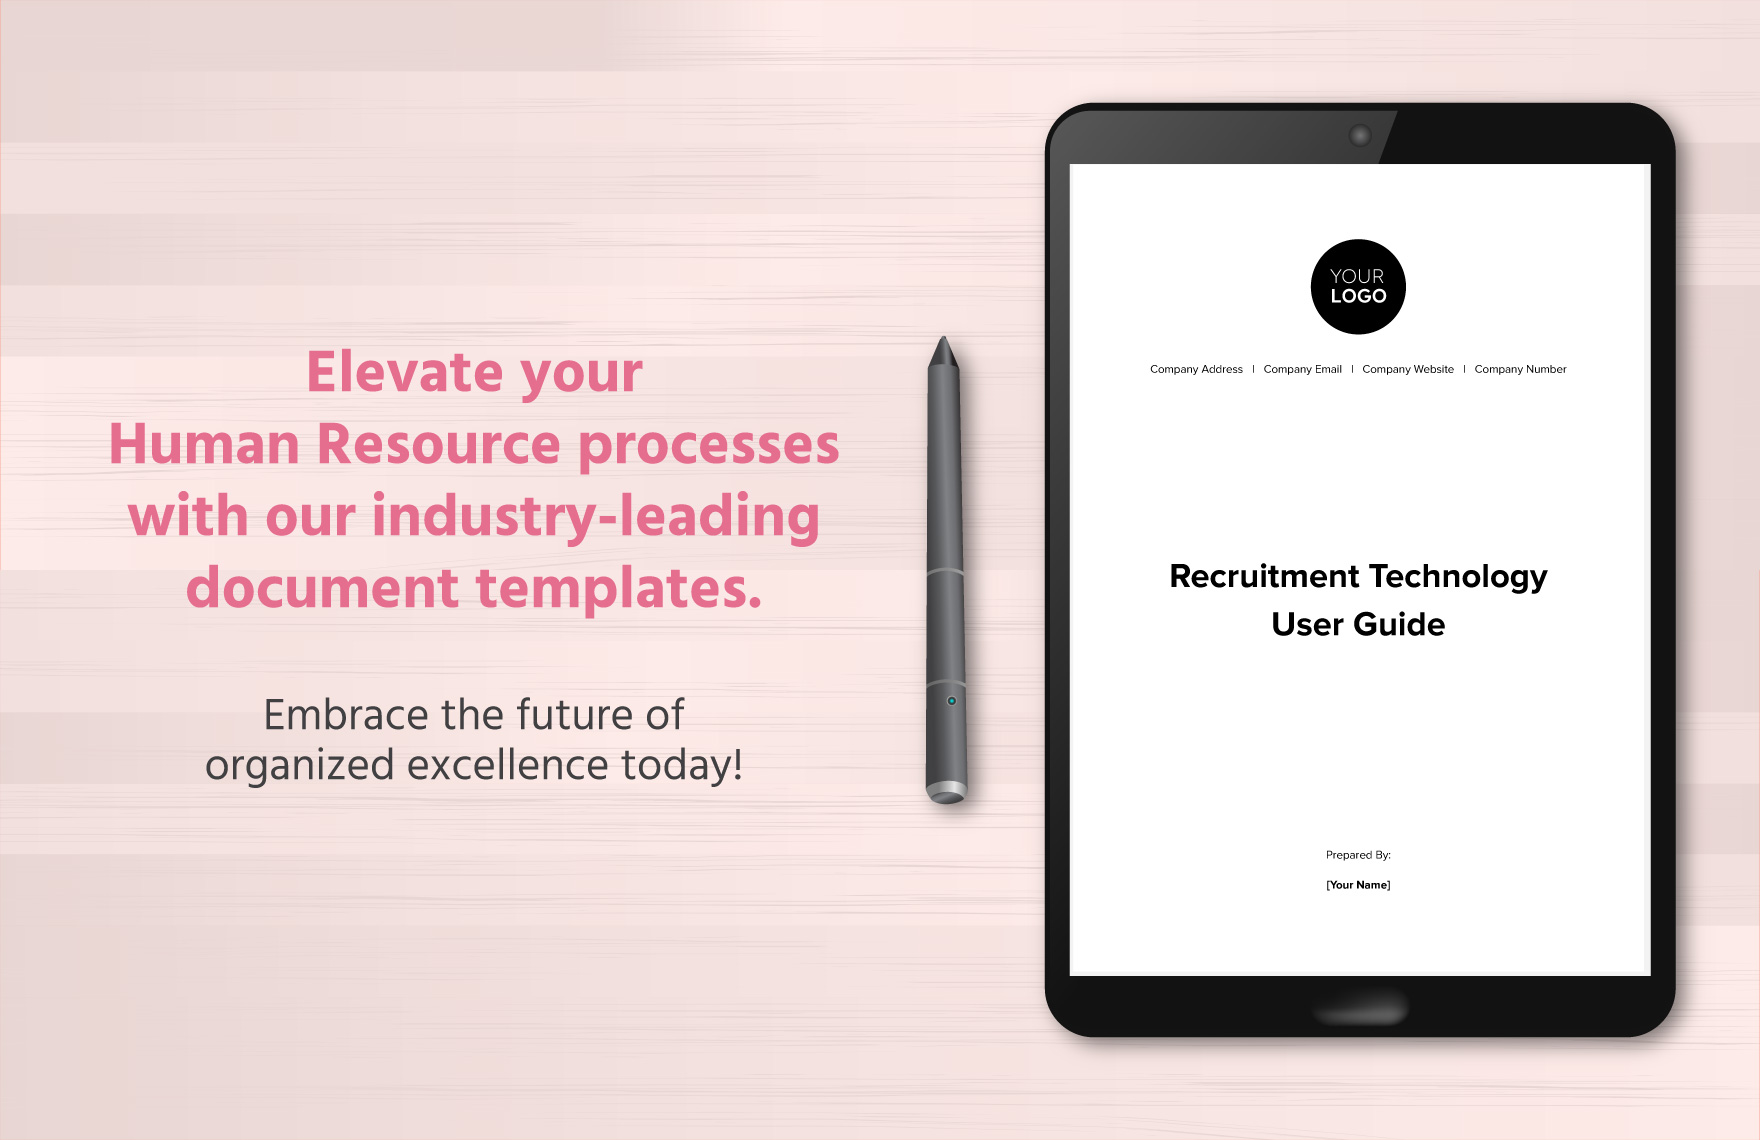 Recruitment Technology User Guide HR Template